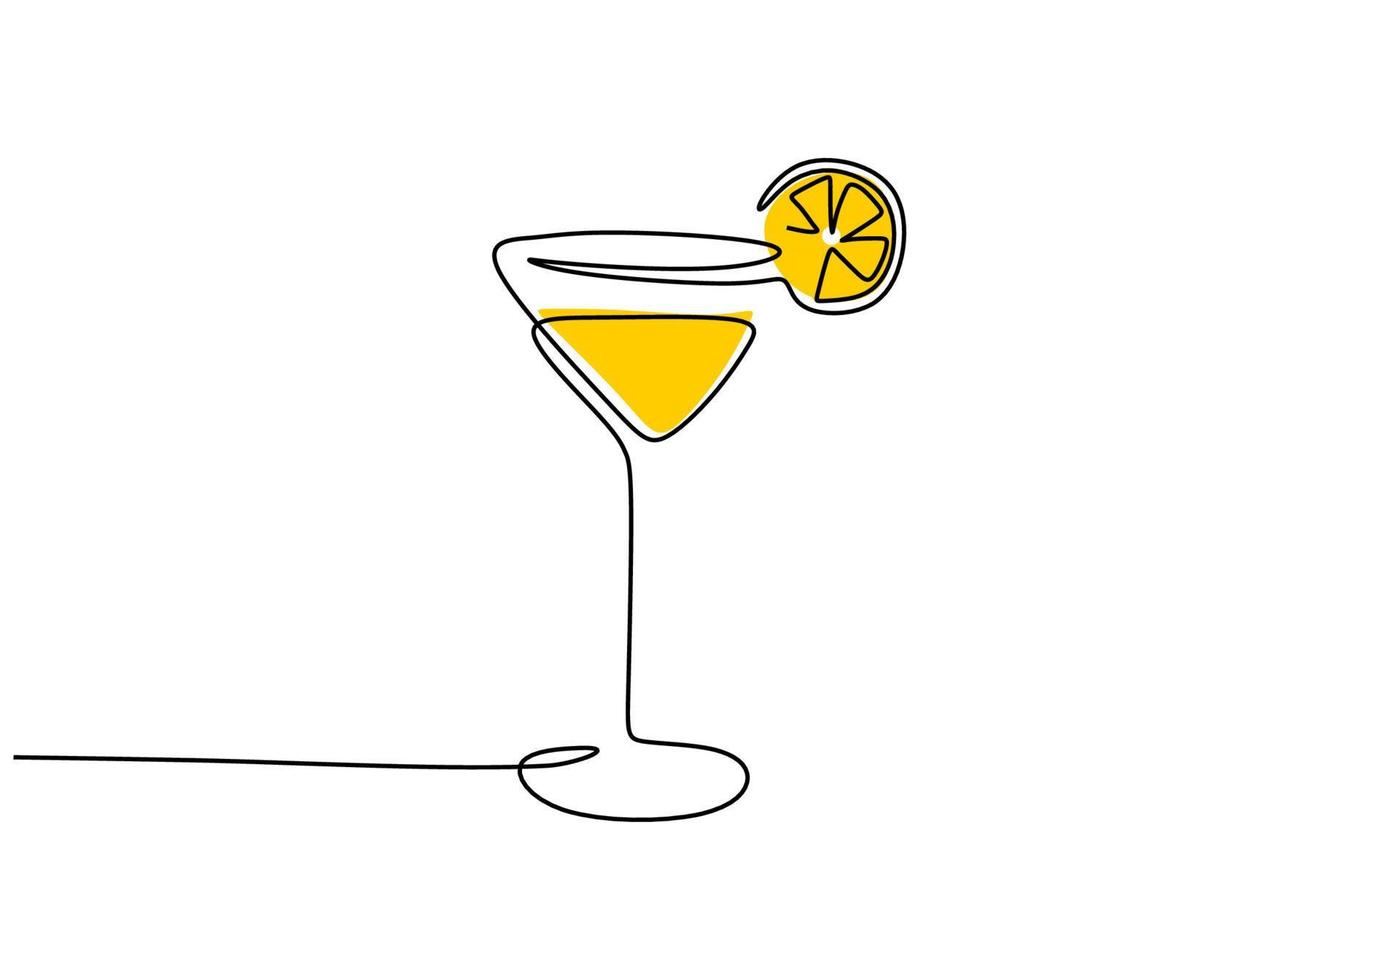 una sola línea continua con cóctel de copa de vino y limón amarillo vector